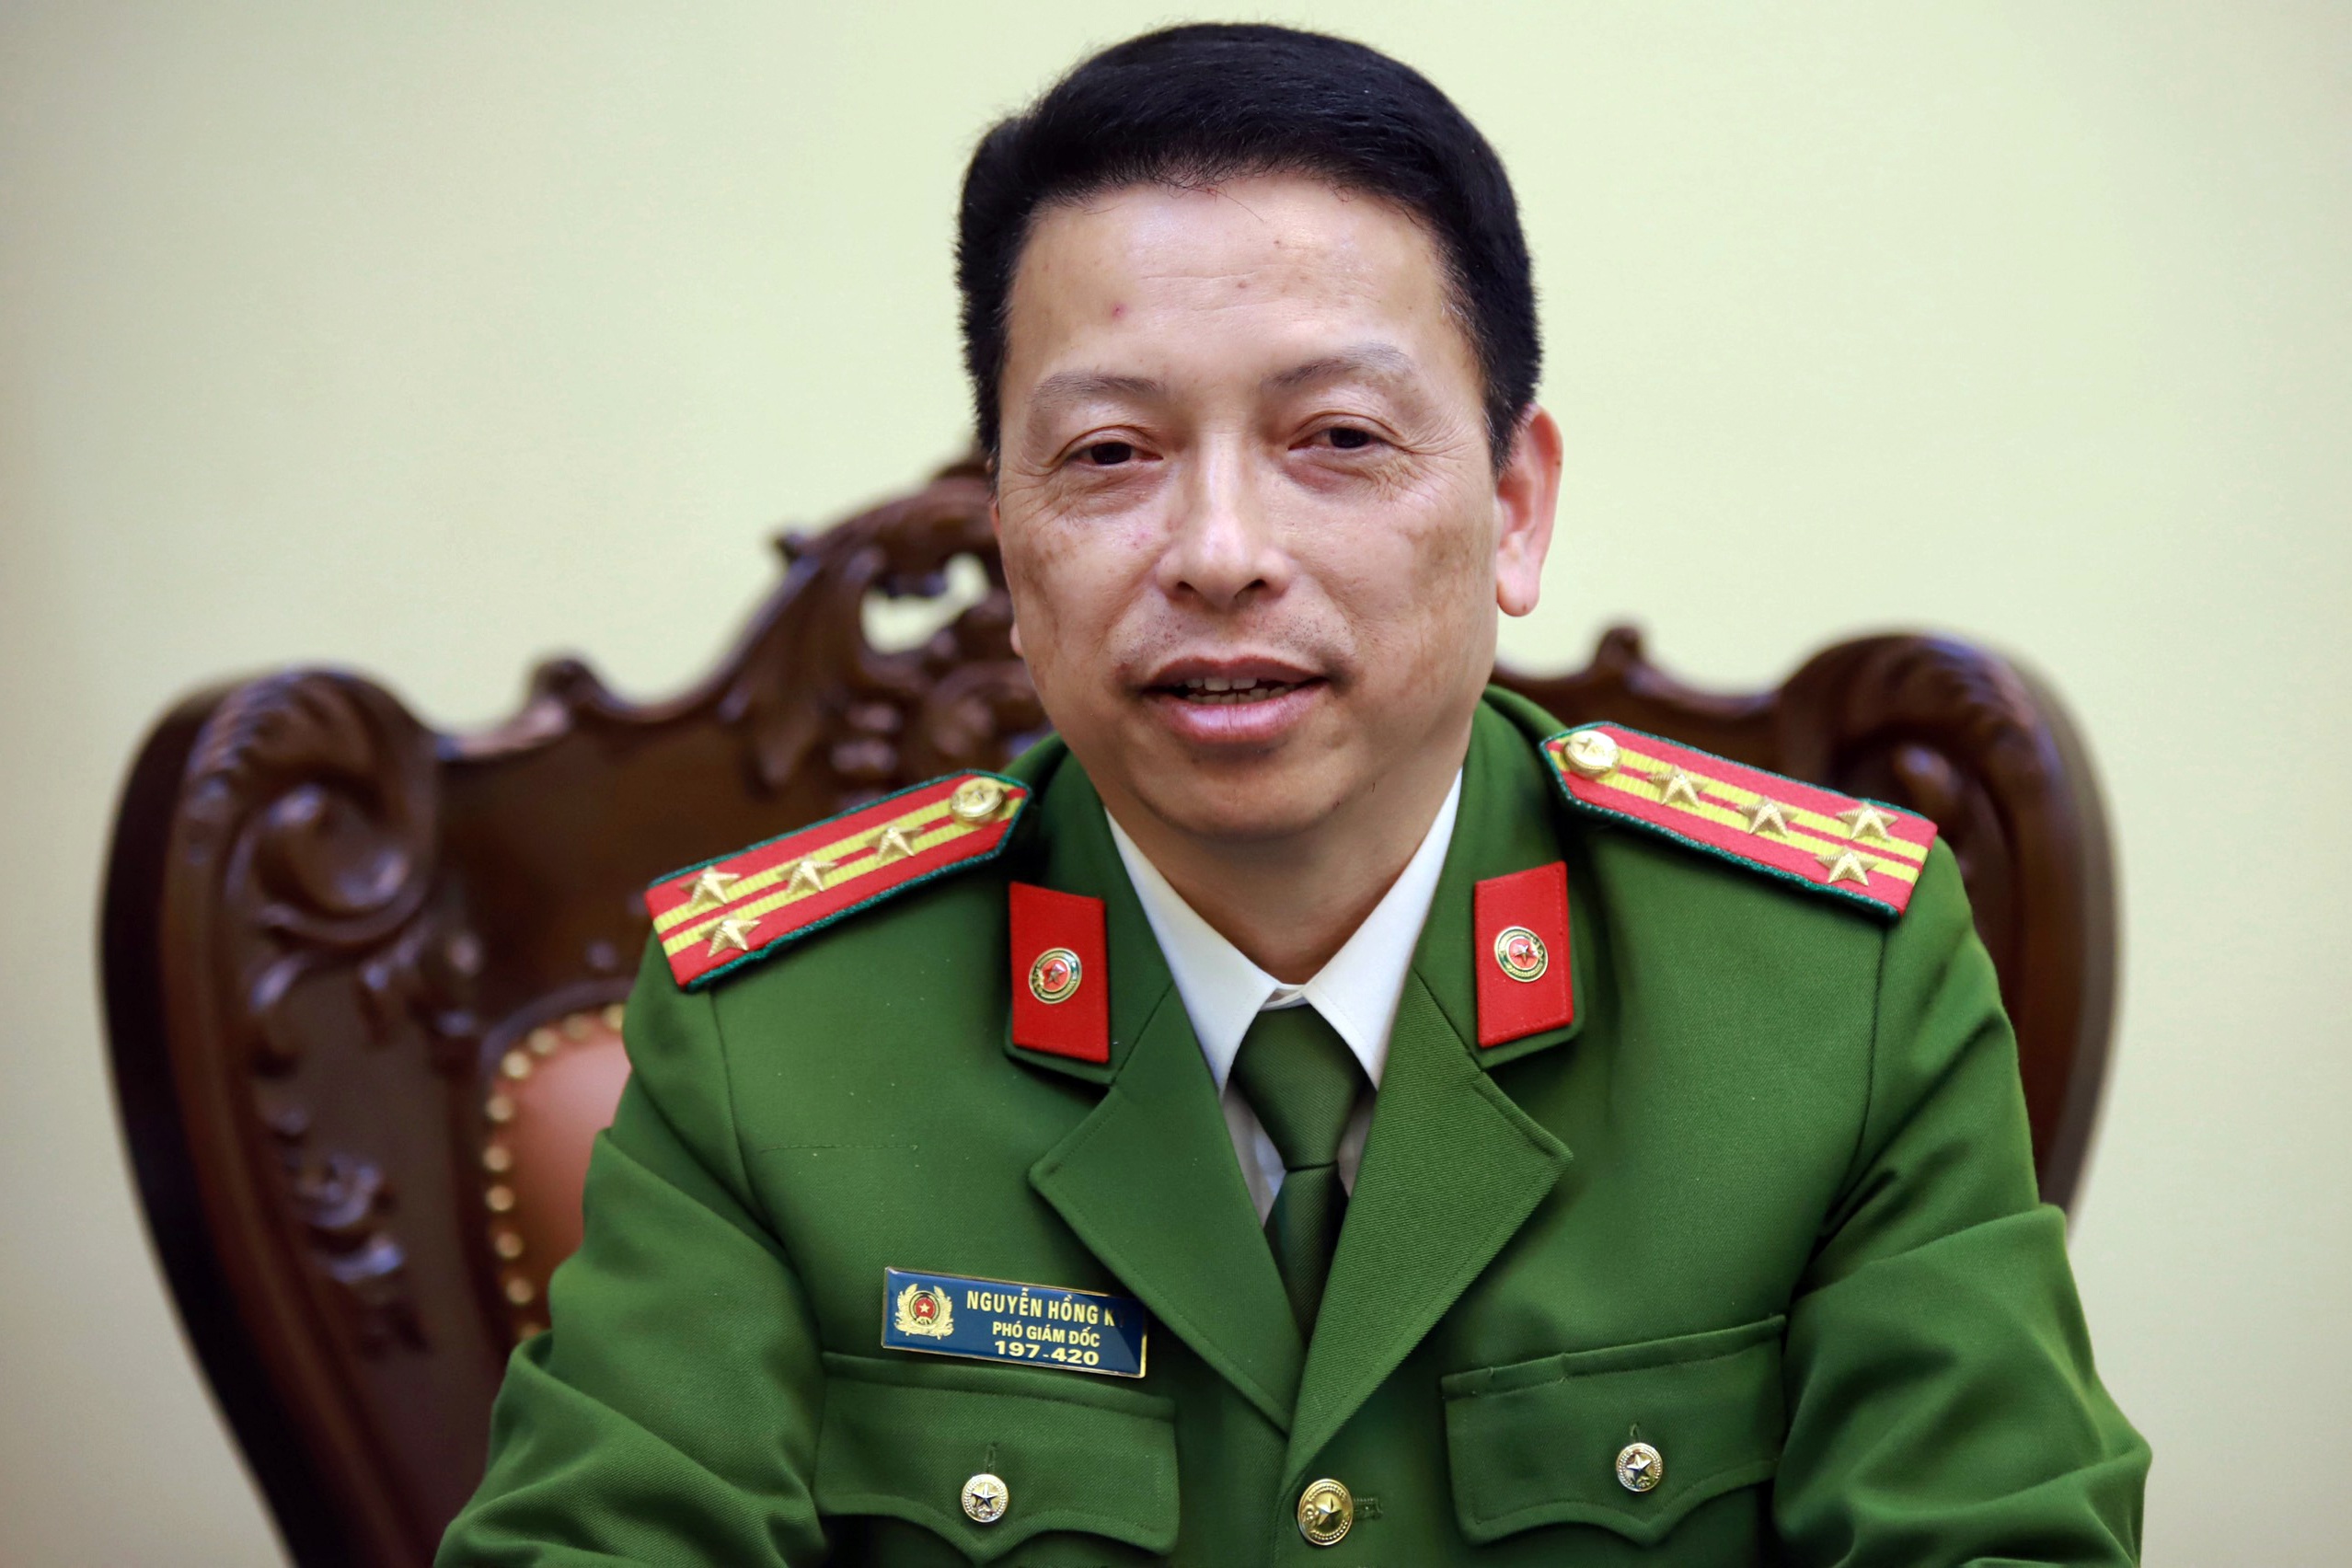 Đại tá Nguyễn Hồng Ky khẳng định Công an Hà Nội sẽ cấp CCCD cho người ngoại tỉnh. Ảnh: Hồng Quang.